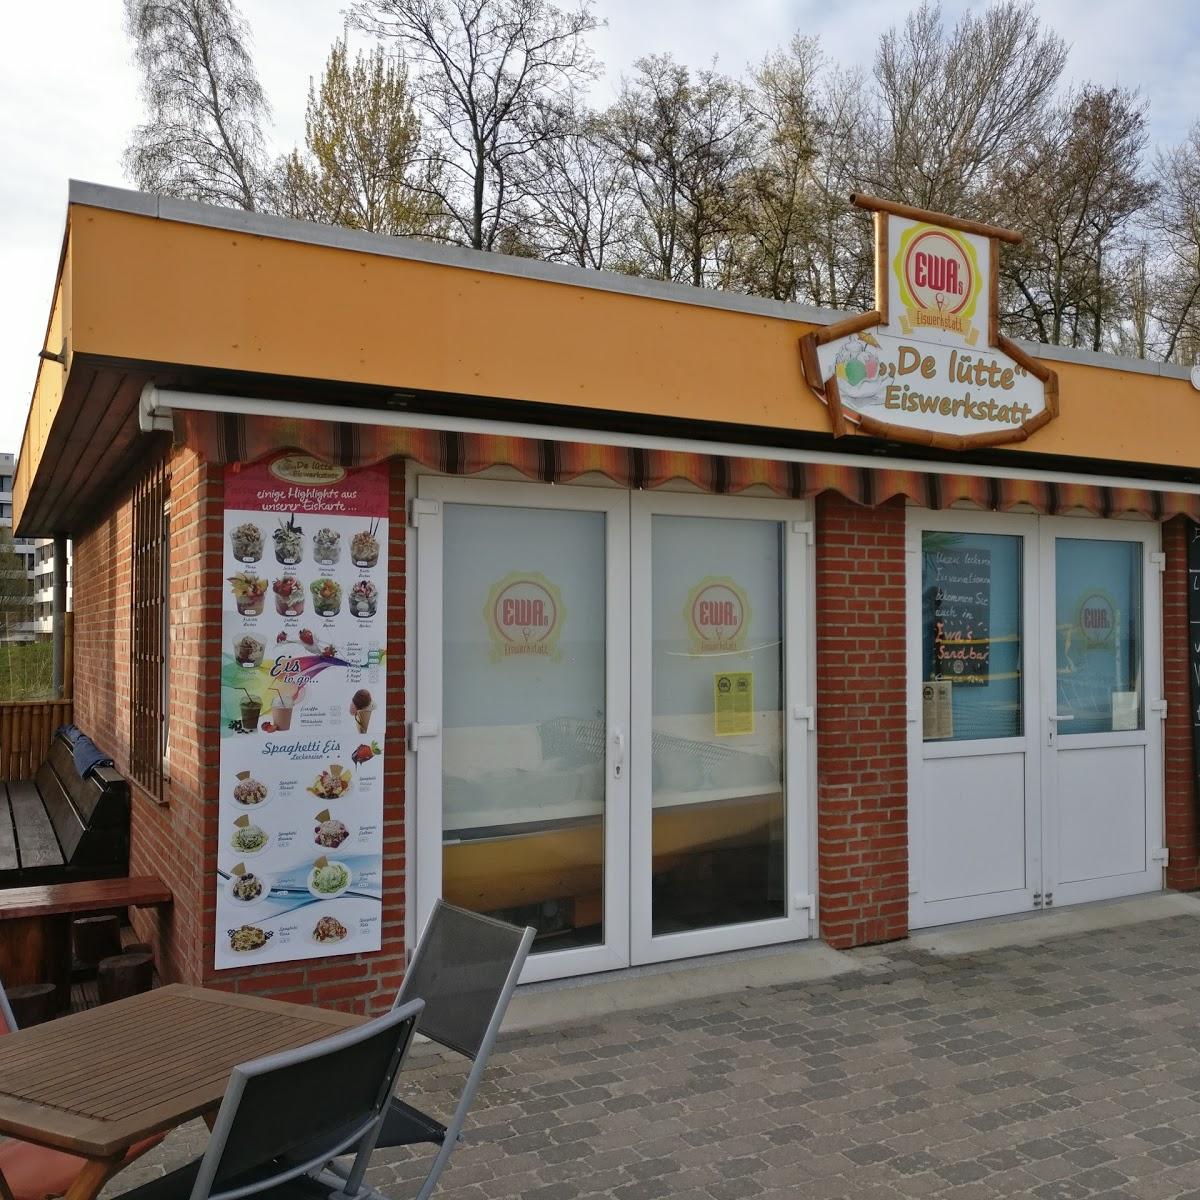 Restaurant "De Lütte Eiswerkstatt" in Kellenhusen (Ostsee)